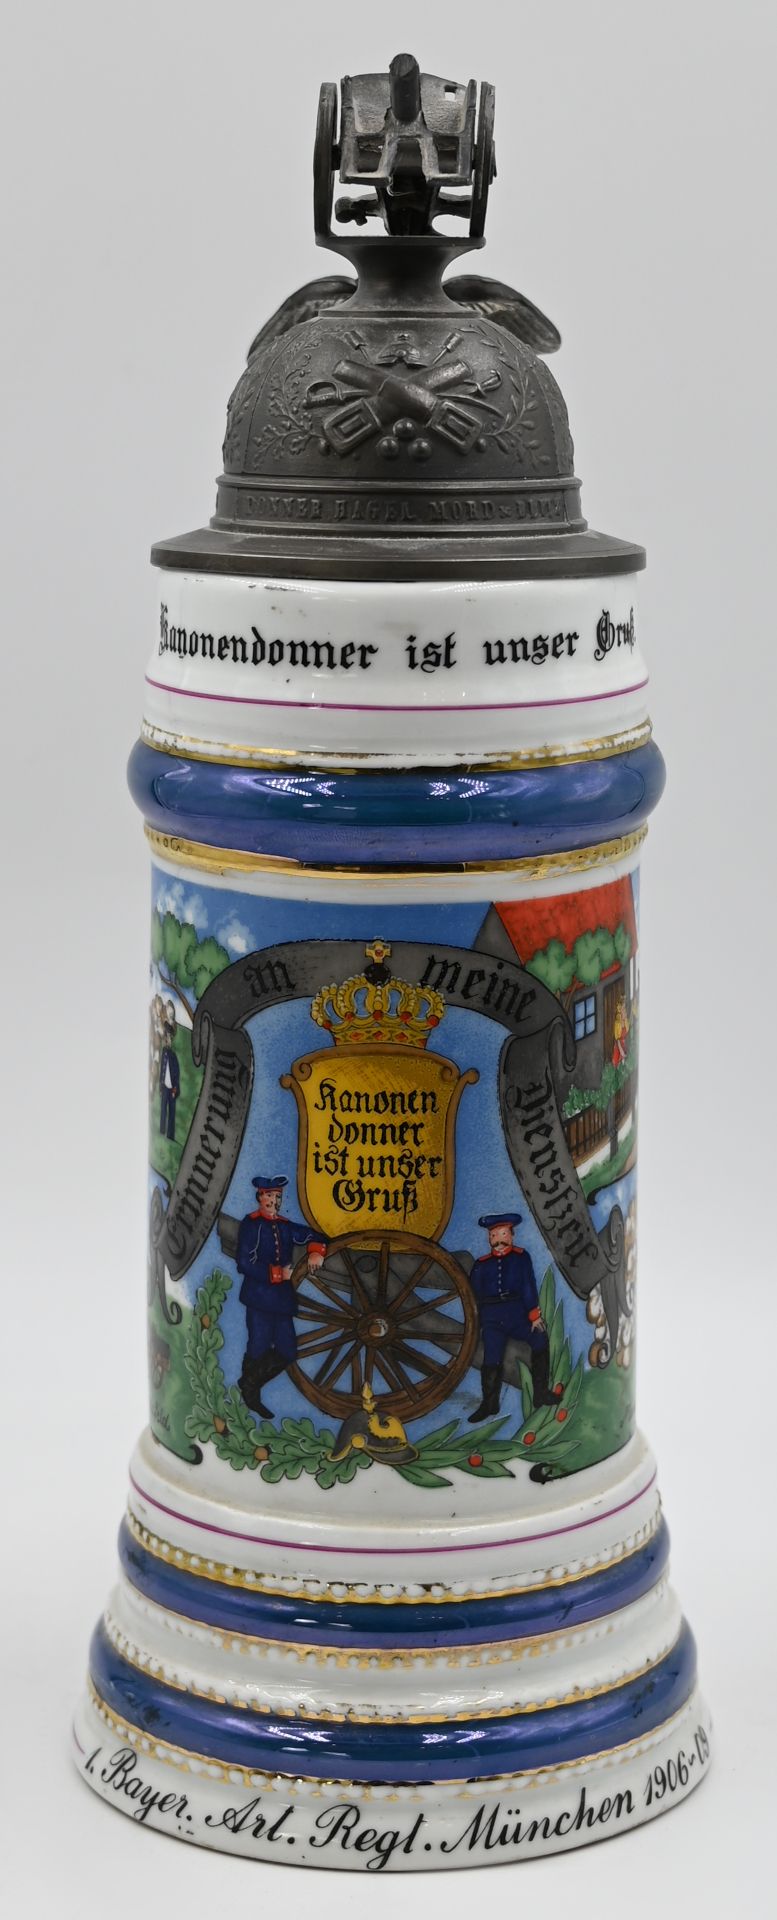 1 Reservistenkrug Porzellan bez. "1. Bayer. Art. Regt. München 1906-09" mit Namensliste, erotischer